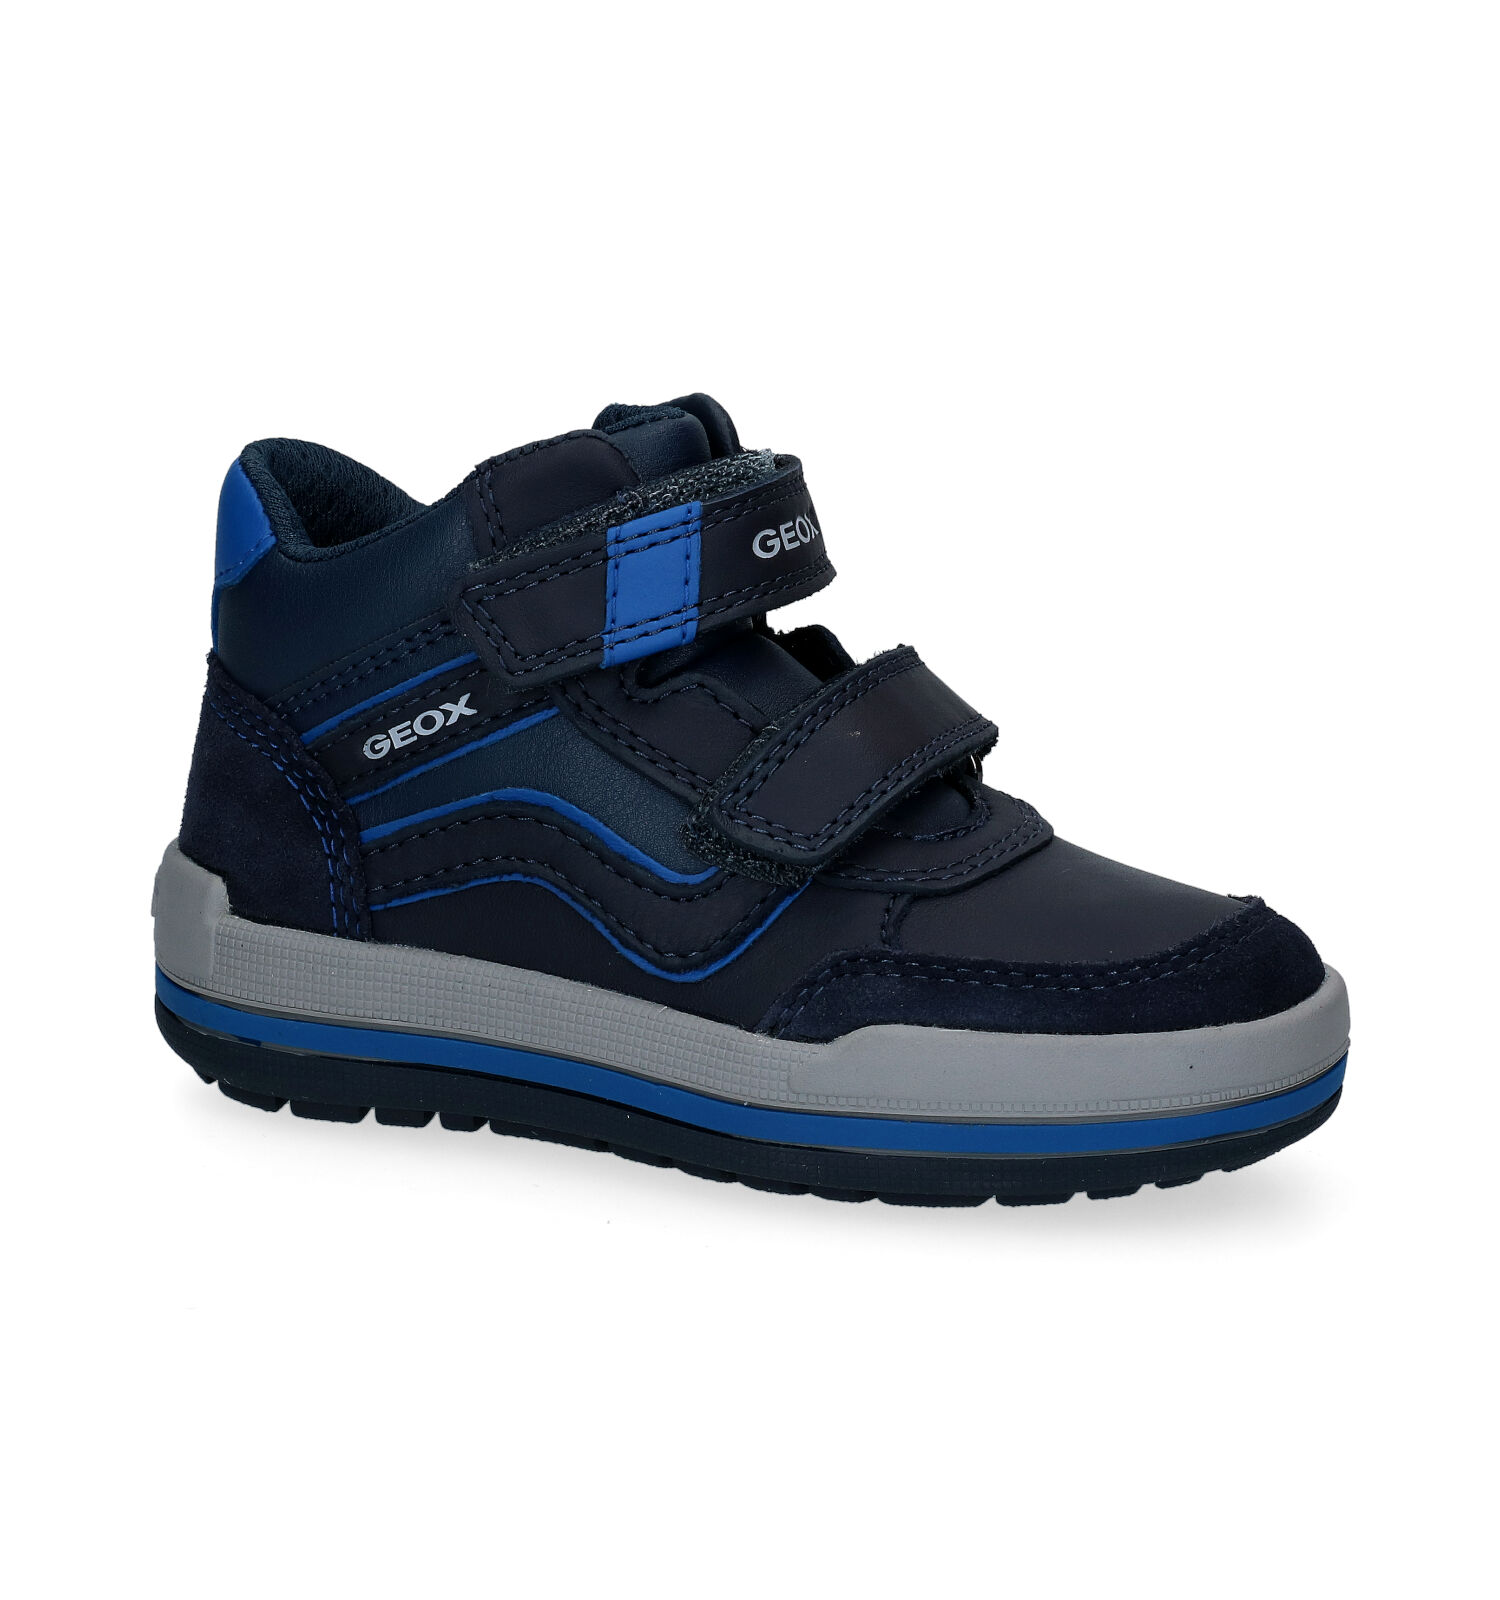 Straat poll Druif Geox Charz Blauwe Hoge Velcroschoenen | Jongens Hoge schoenen